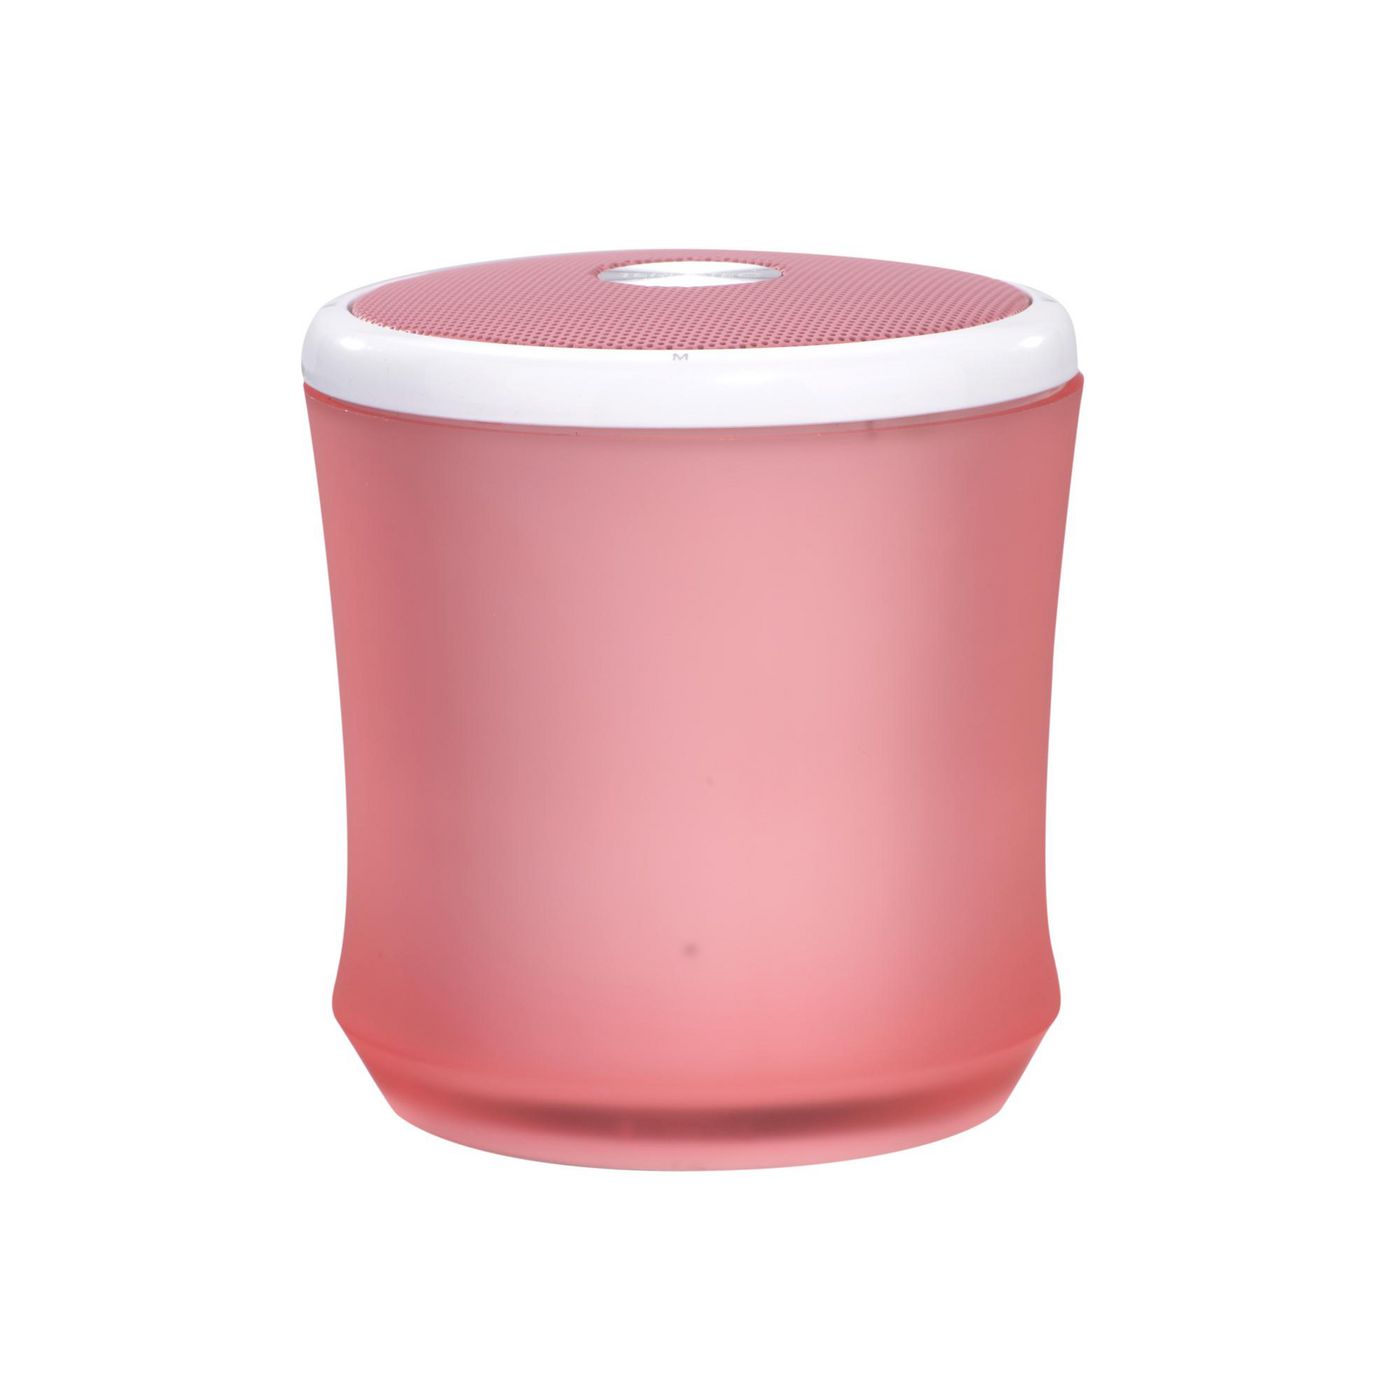 Terratec 145356 W128285260 Portable Speaker Pink 2.2 W 